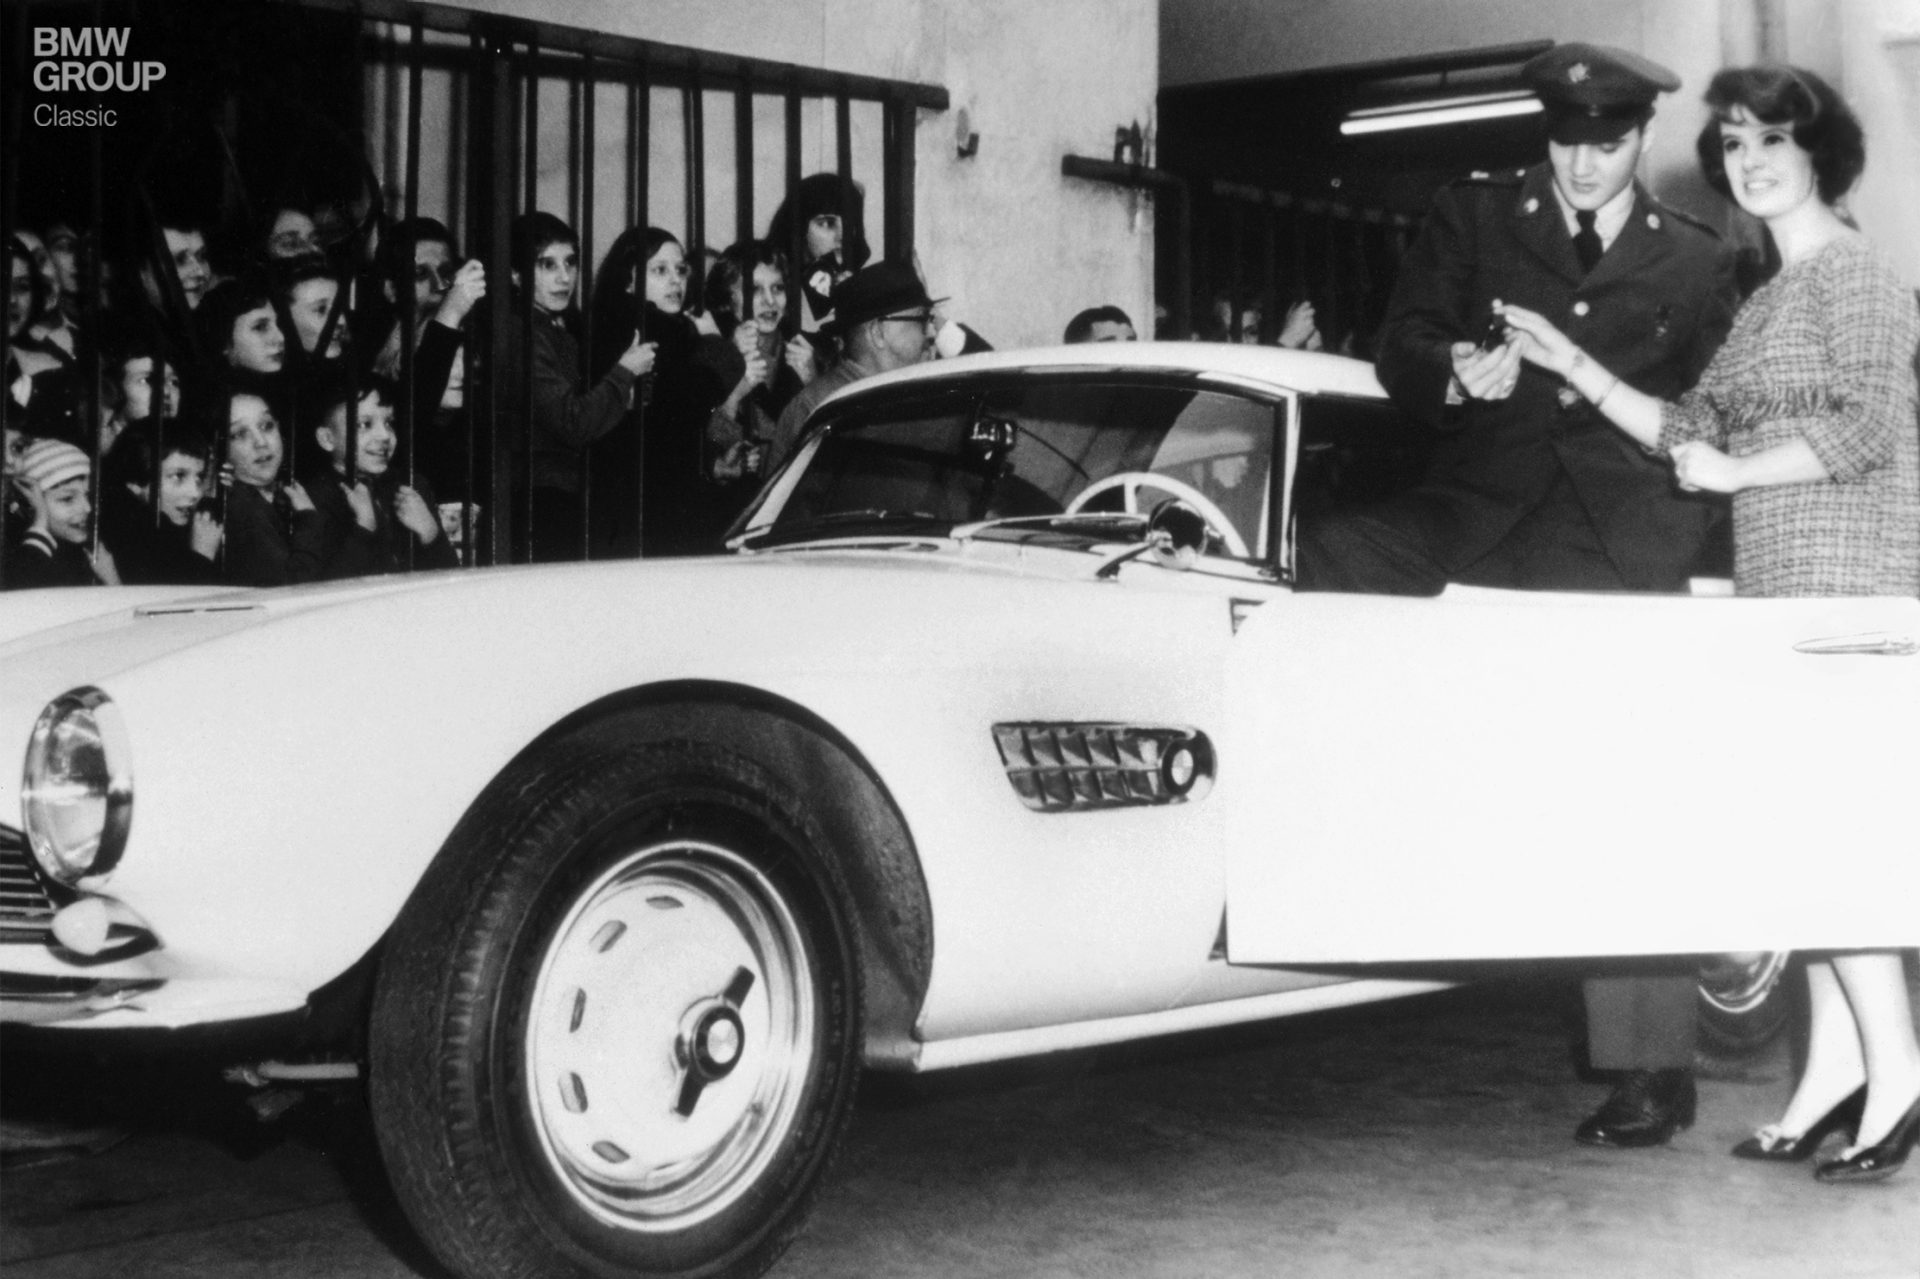  Elvis Presley steigt in einen BMW 507